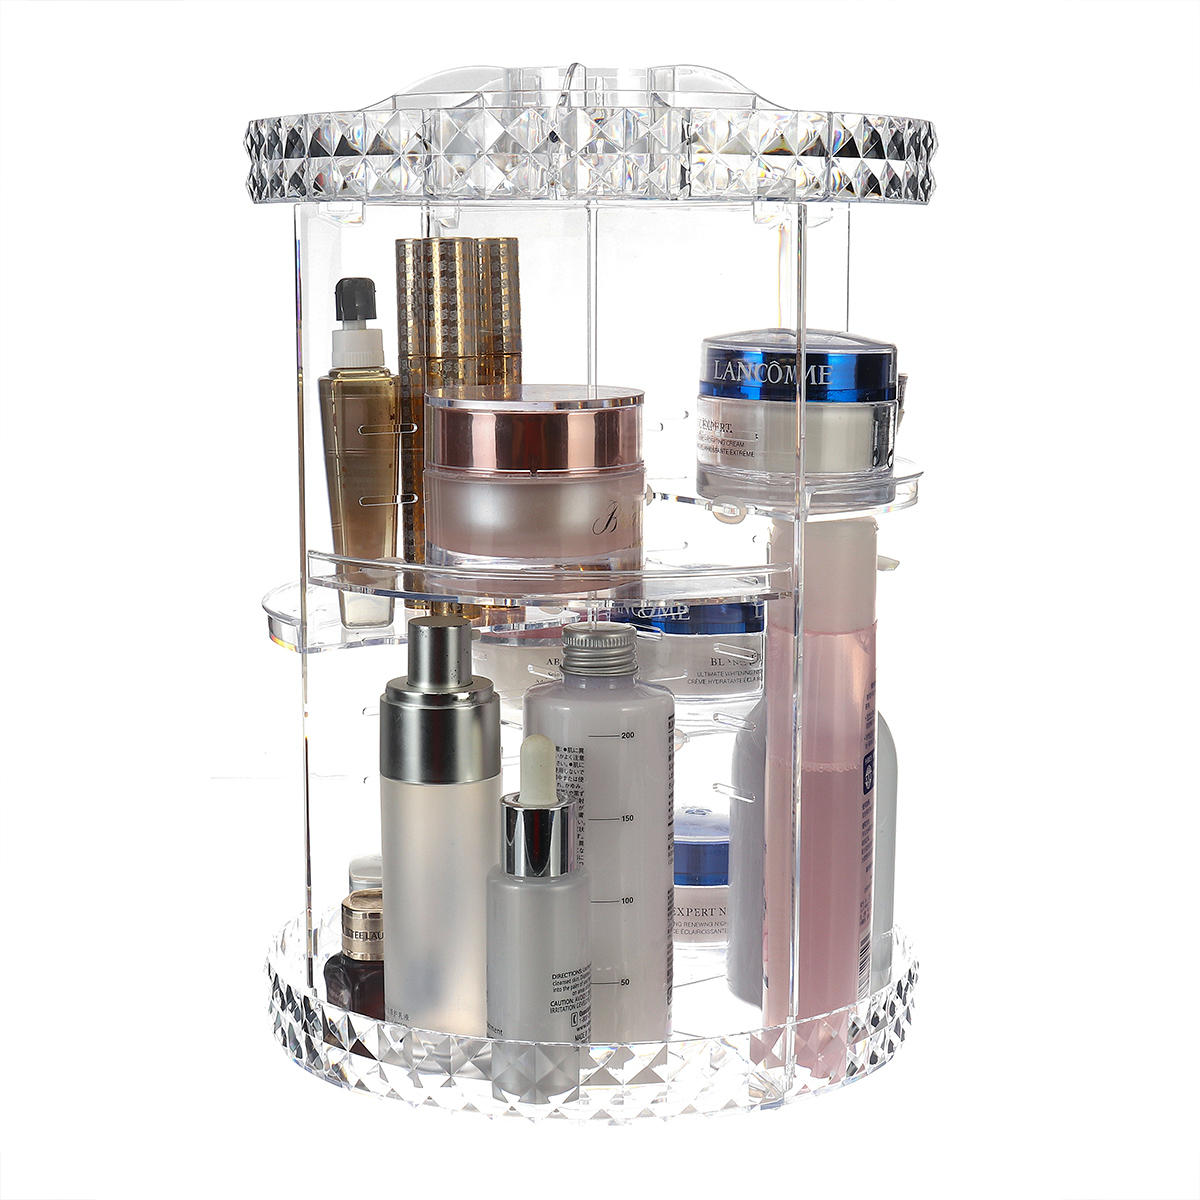 360 Grad-Umdrehung transparente Acrylkosmetik-Aufbewahrungsbox-Art- und Weisespin-Multifunktionsdesktop-abnehmbare Verfa